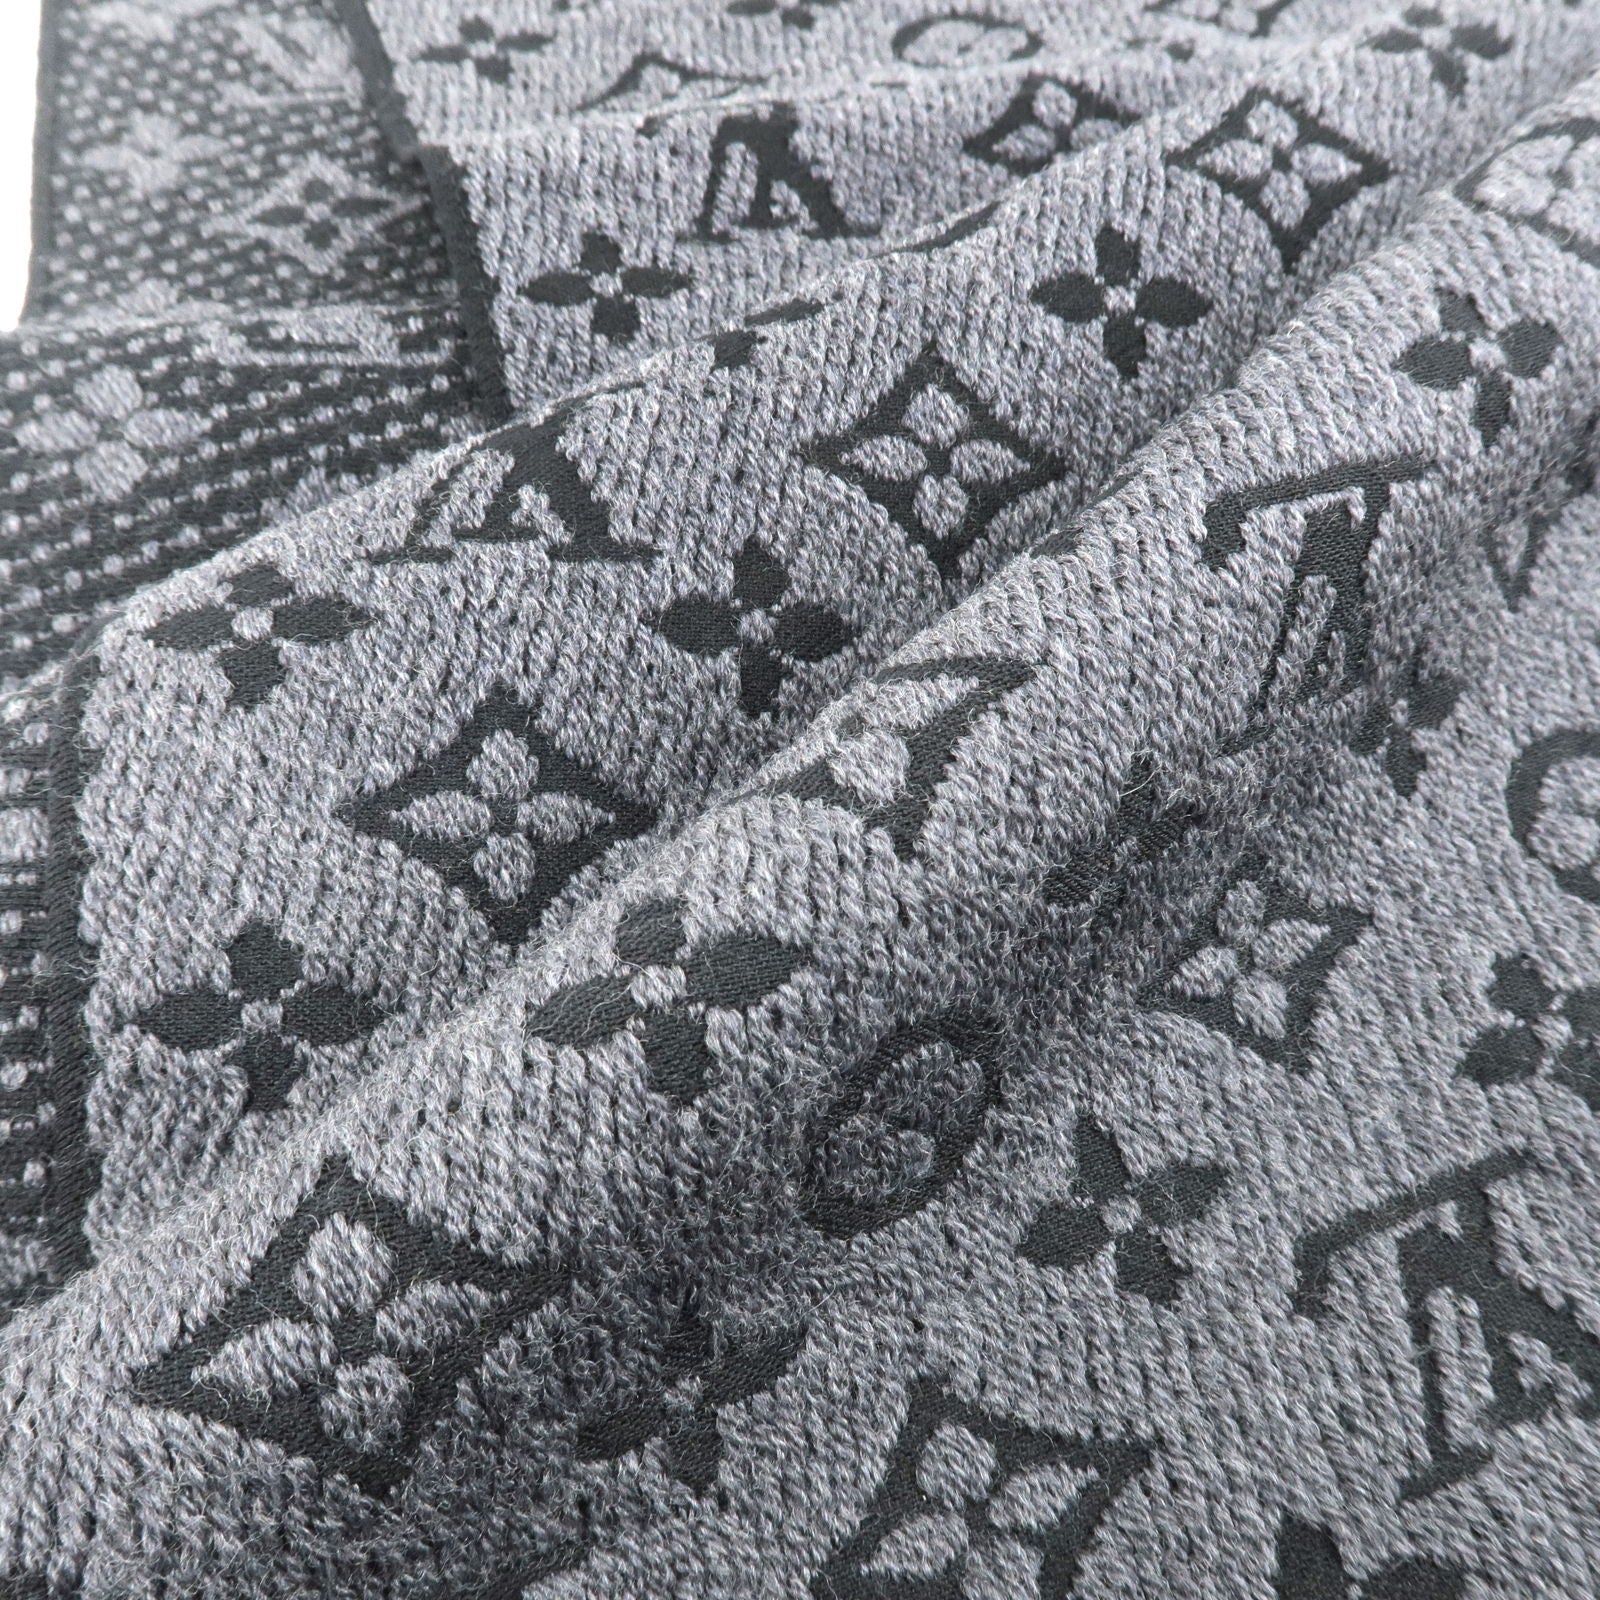 Louis Vuitton Wool Scarf